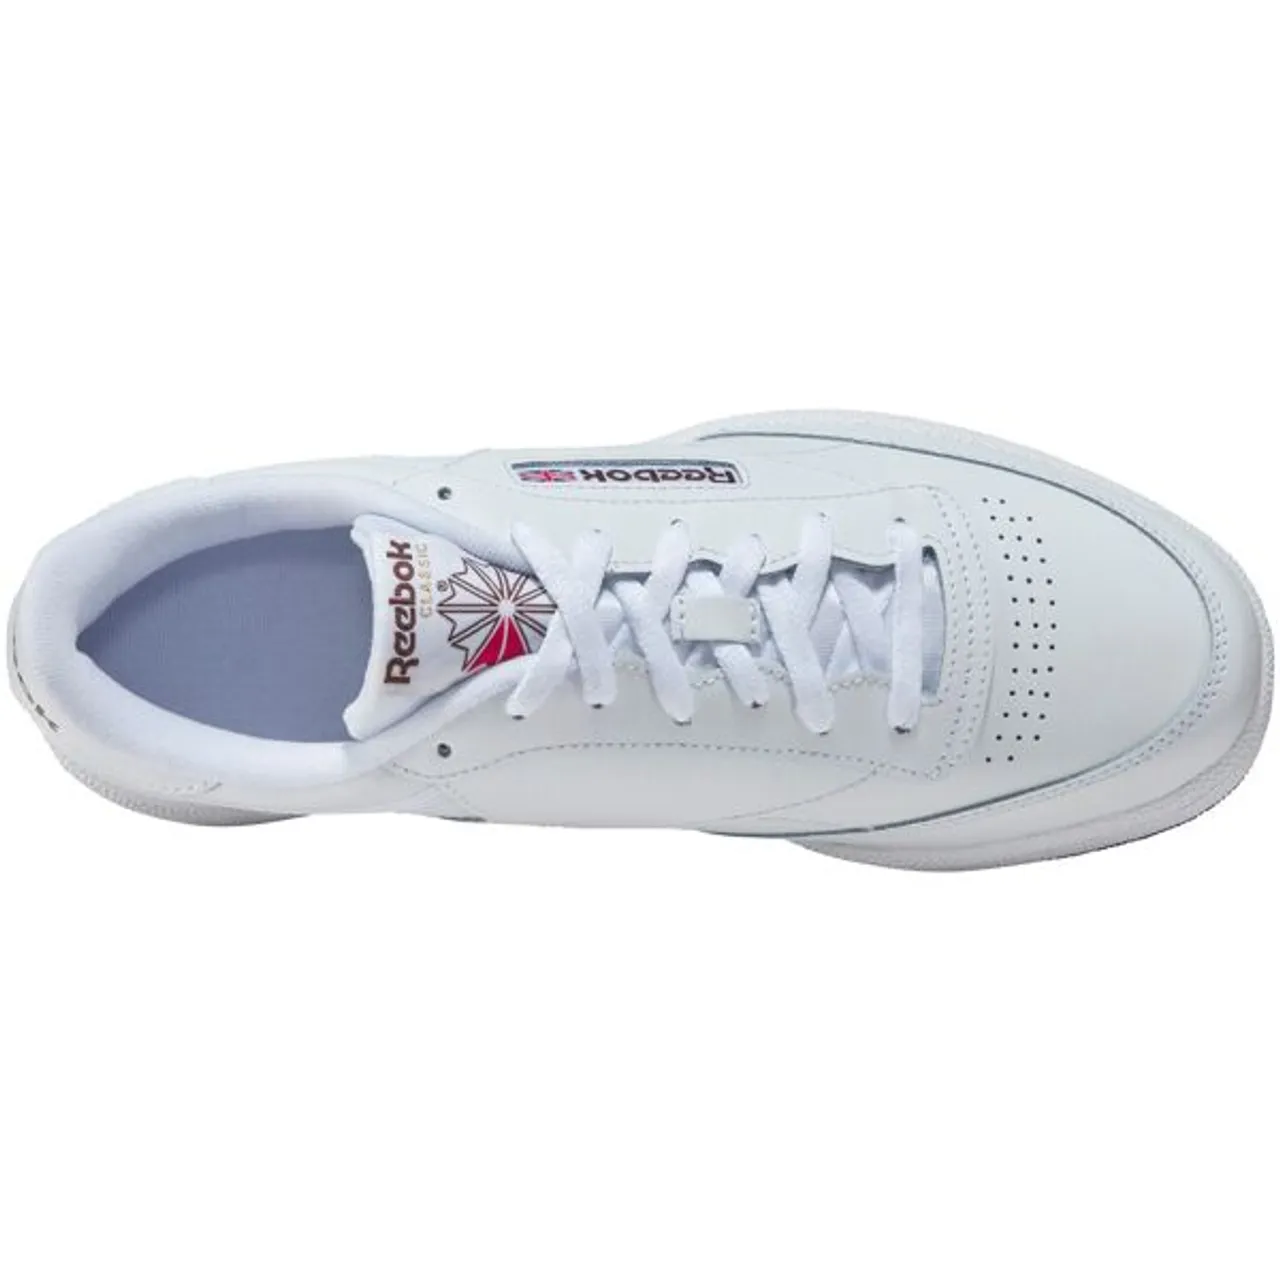 Sneaker REEBOK CLASSIC "Club C 85" Gr. 38,5, schwarz-weiß (weiß, schwarz) Schuhe Schnürhalbschuhe